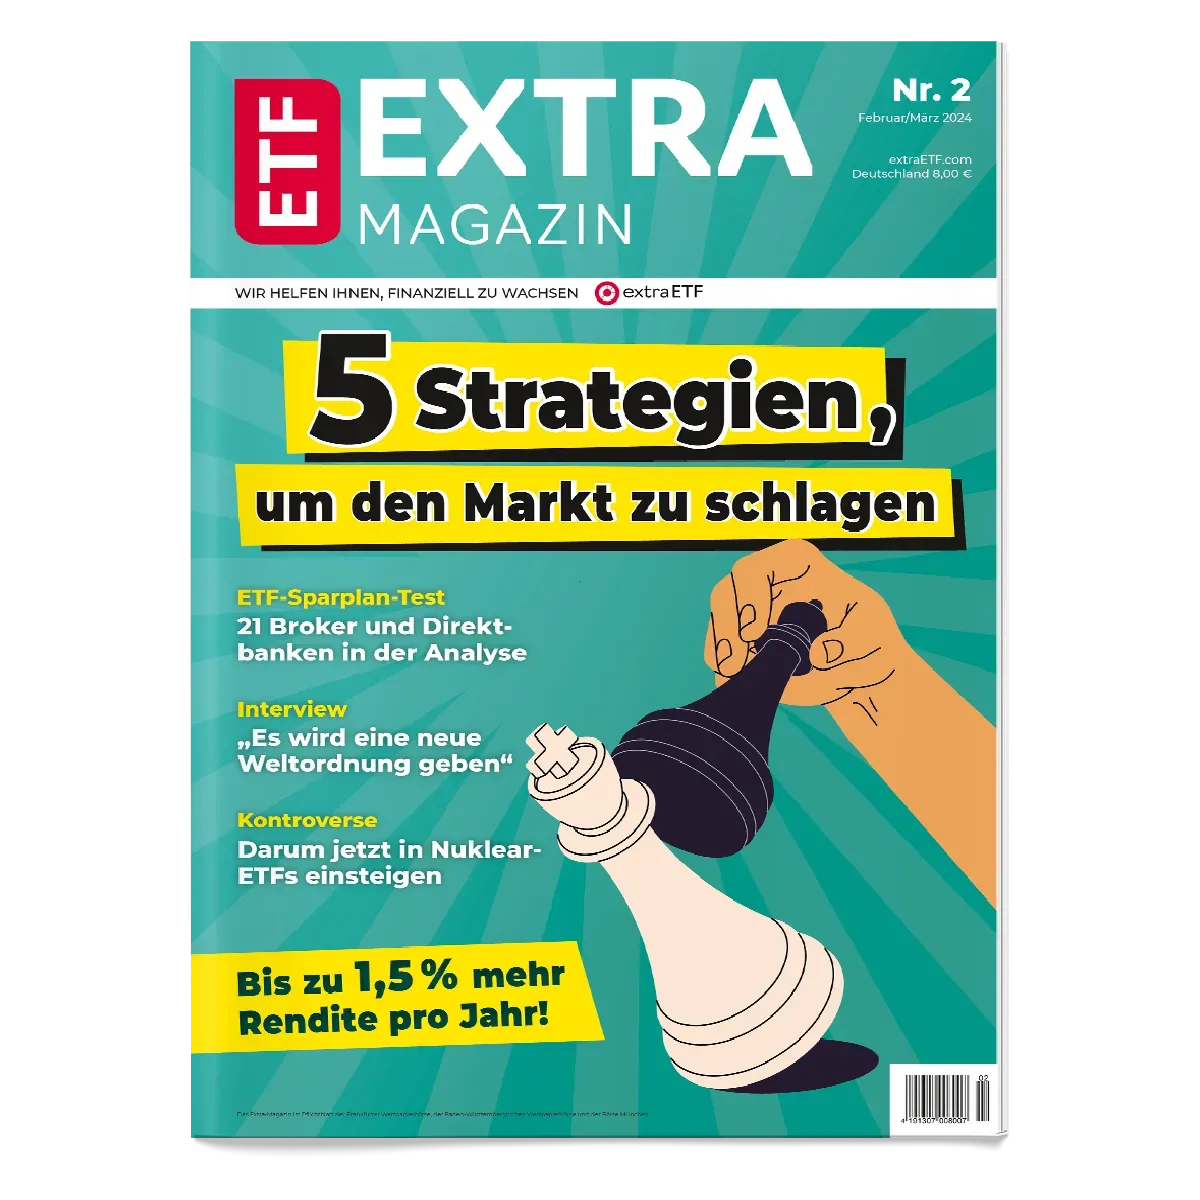 Jetzt die aktuelle Ausgabe des Extra-Magazins bestellen!